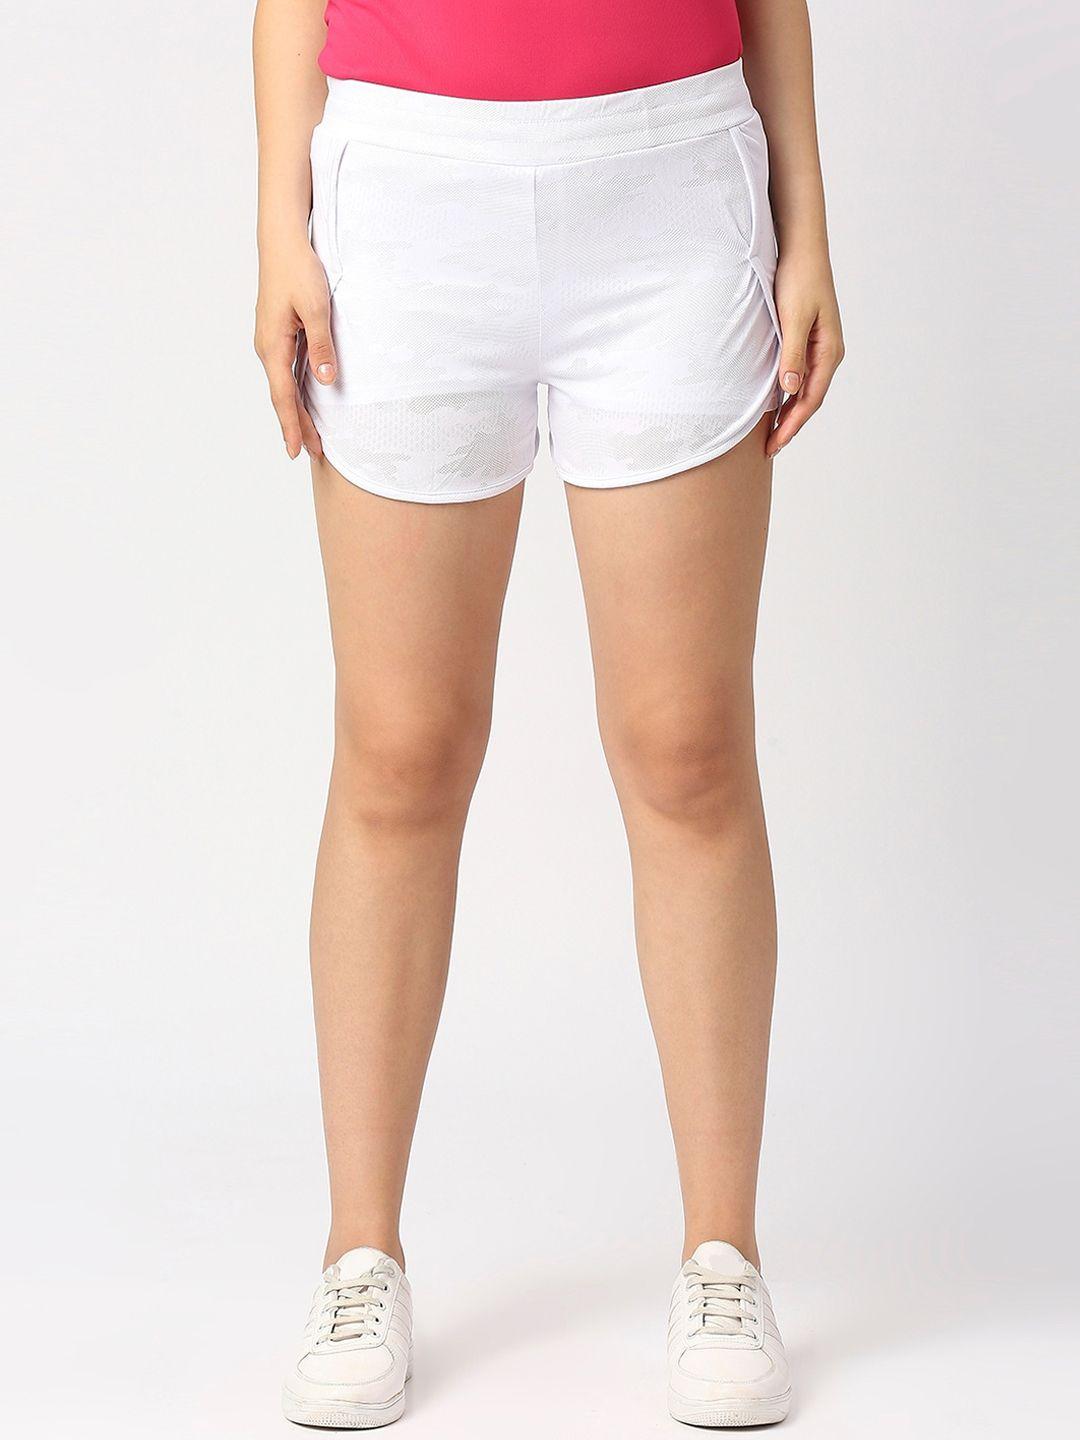 lovable-sport-women-white-slim-fit-running-hot-pants-shorts